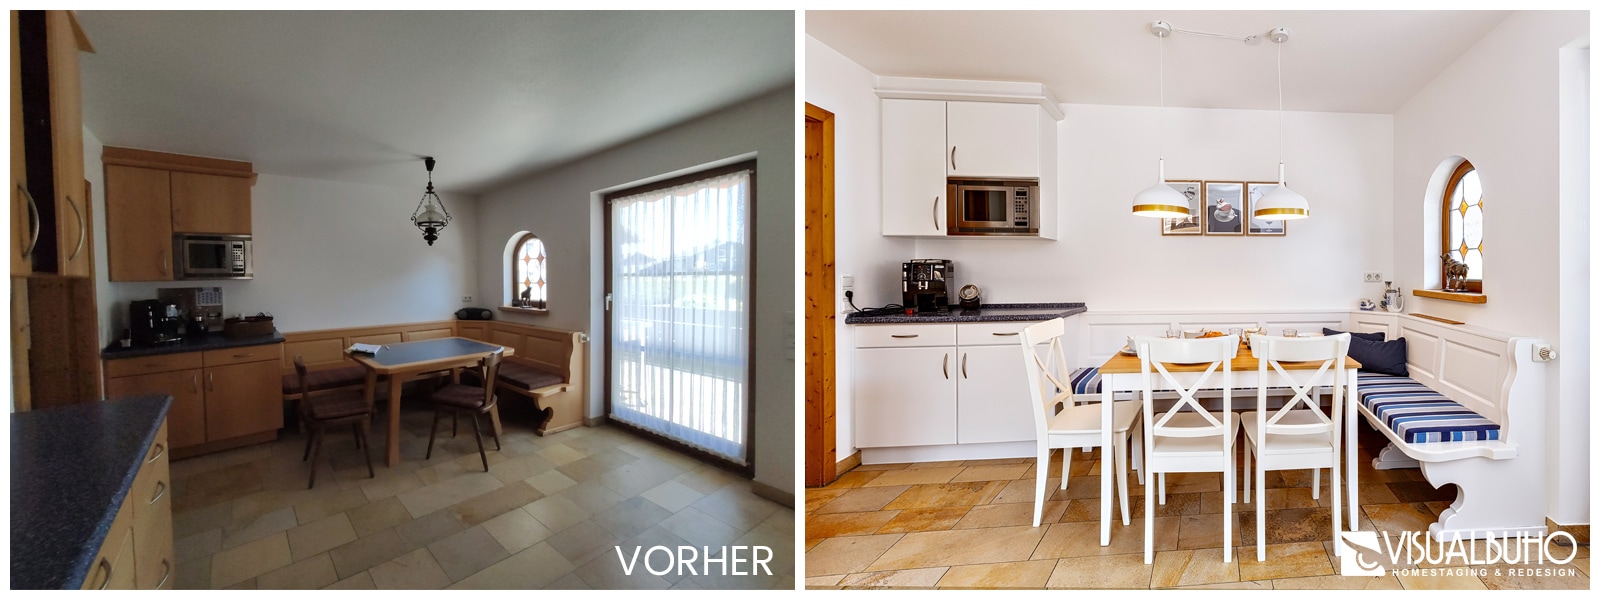 Küche mit weißer Eckbank Ferienhaus Lechbruck Vergleichsbild